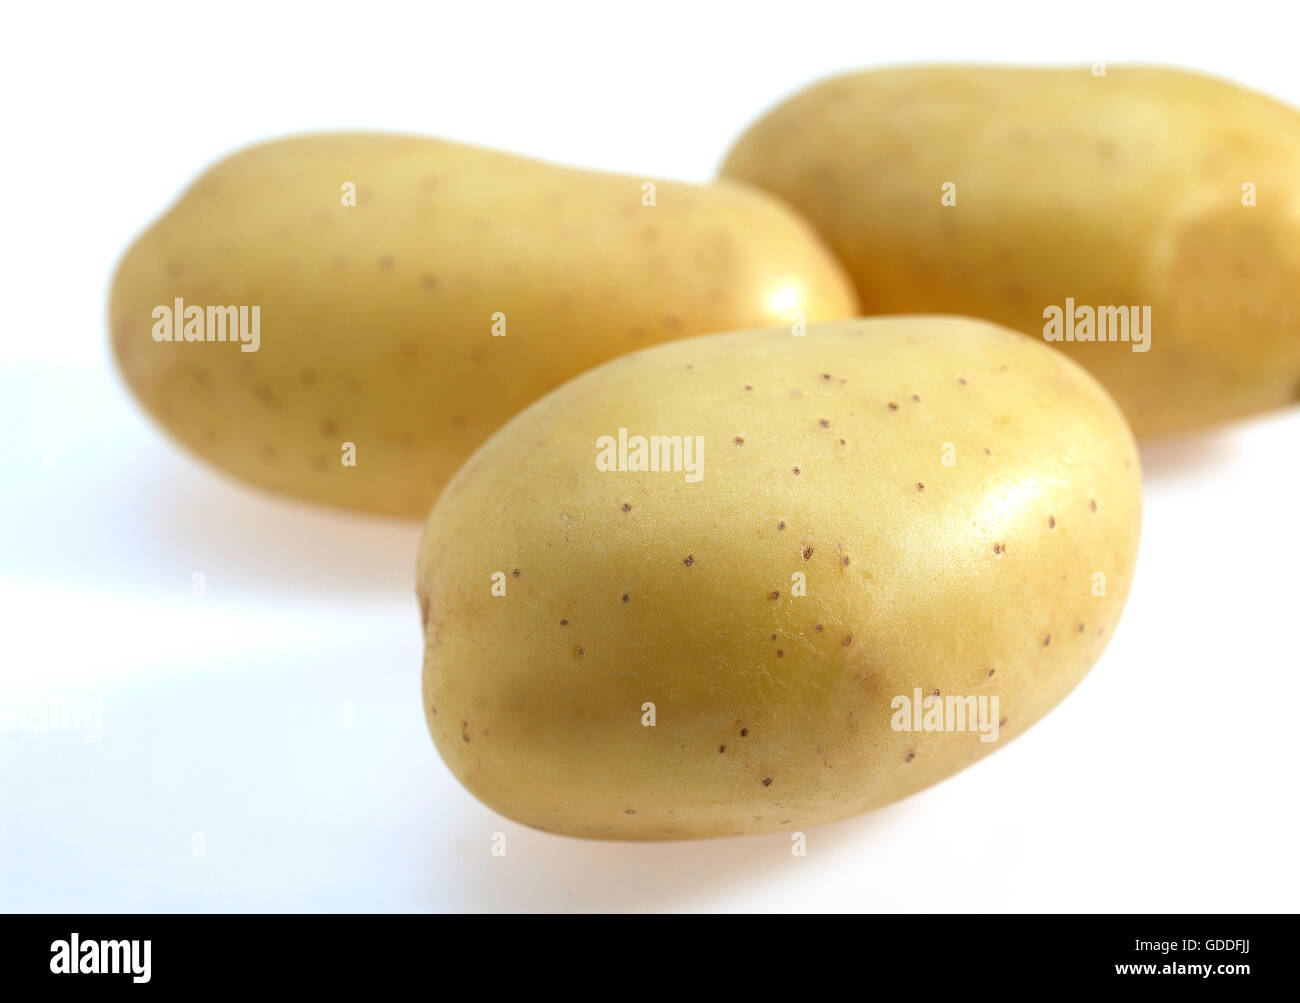 Mona Lisa Potato, solanum tuberosum, Vegetables against White Background Stock Photo